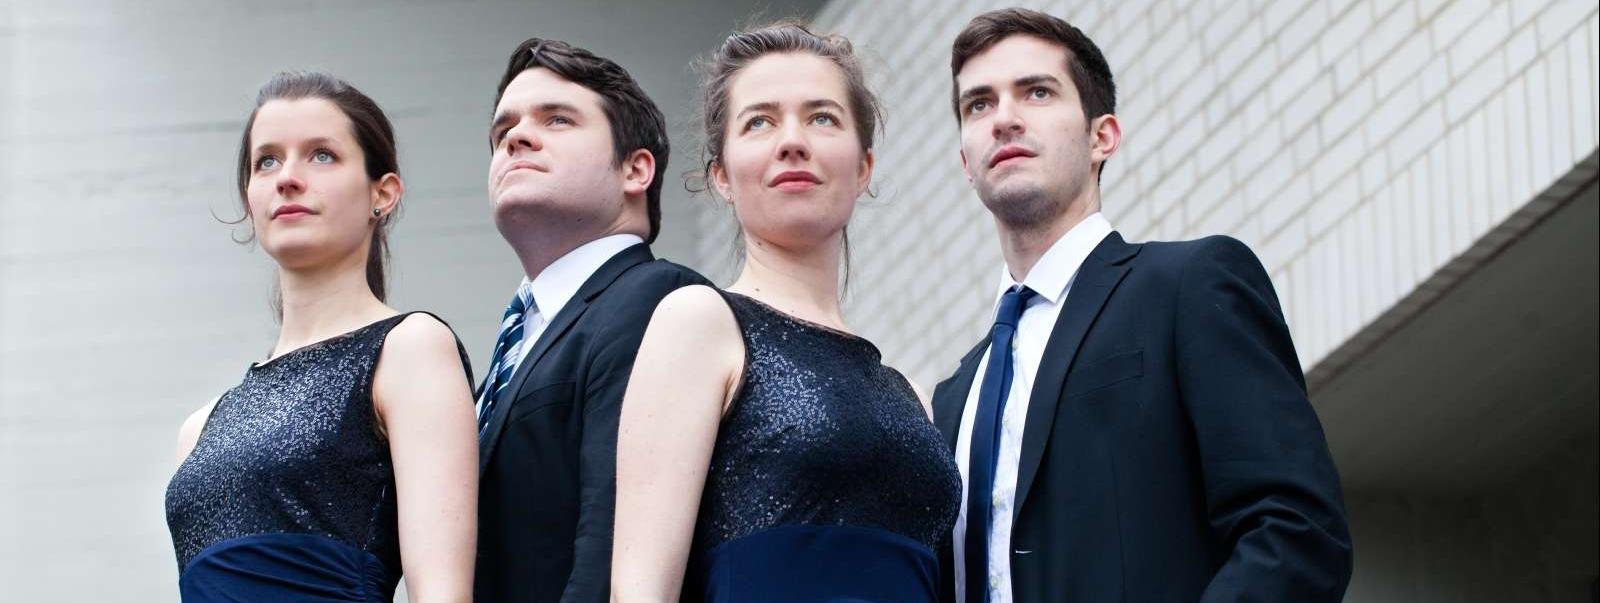 Die vier Musiker, zwei Frauen und zwei Männer, schauen in die Ferne. Die Frauen tragen beide die gleichen blauen Abendkleider, die Männer schwarze Anzüge und Krawatten.